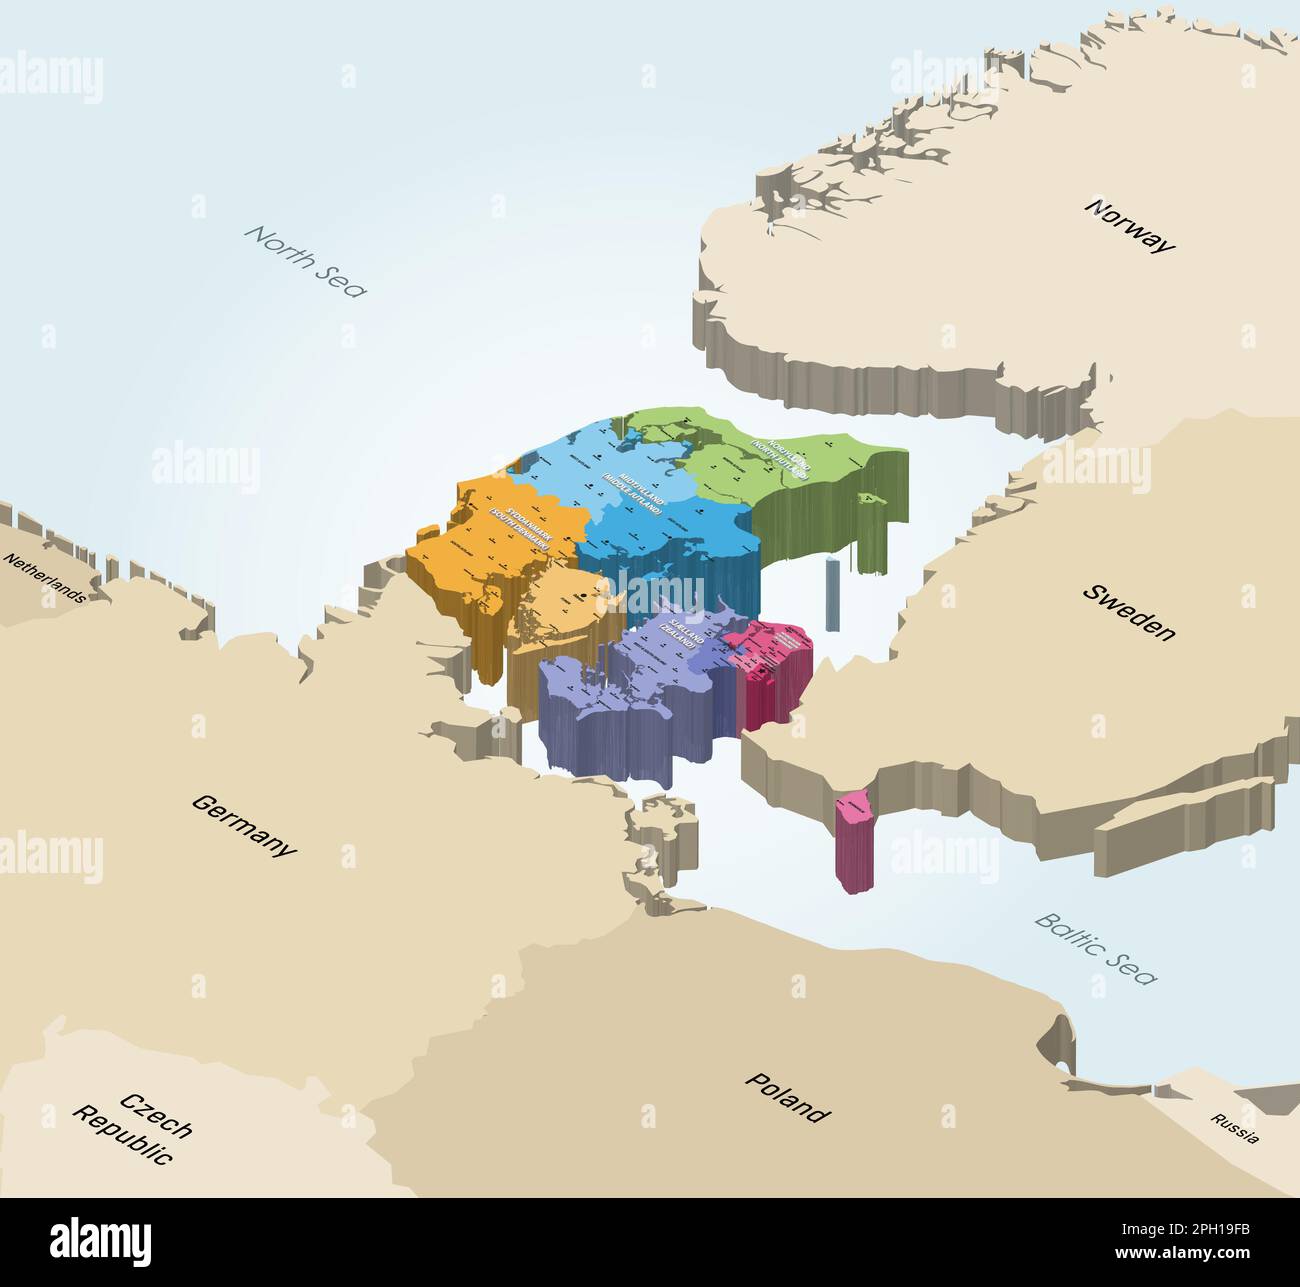 Danimarca Provincie mappa isometrica colorata per regioni con le città più grandi su di essa. Paesi vicini sullo sfondo Illustrazione Vettoriale